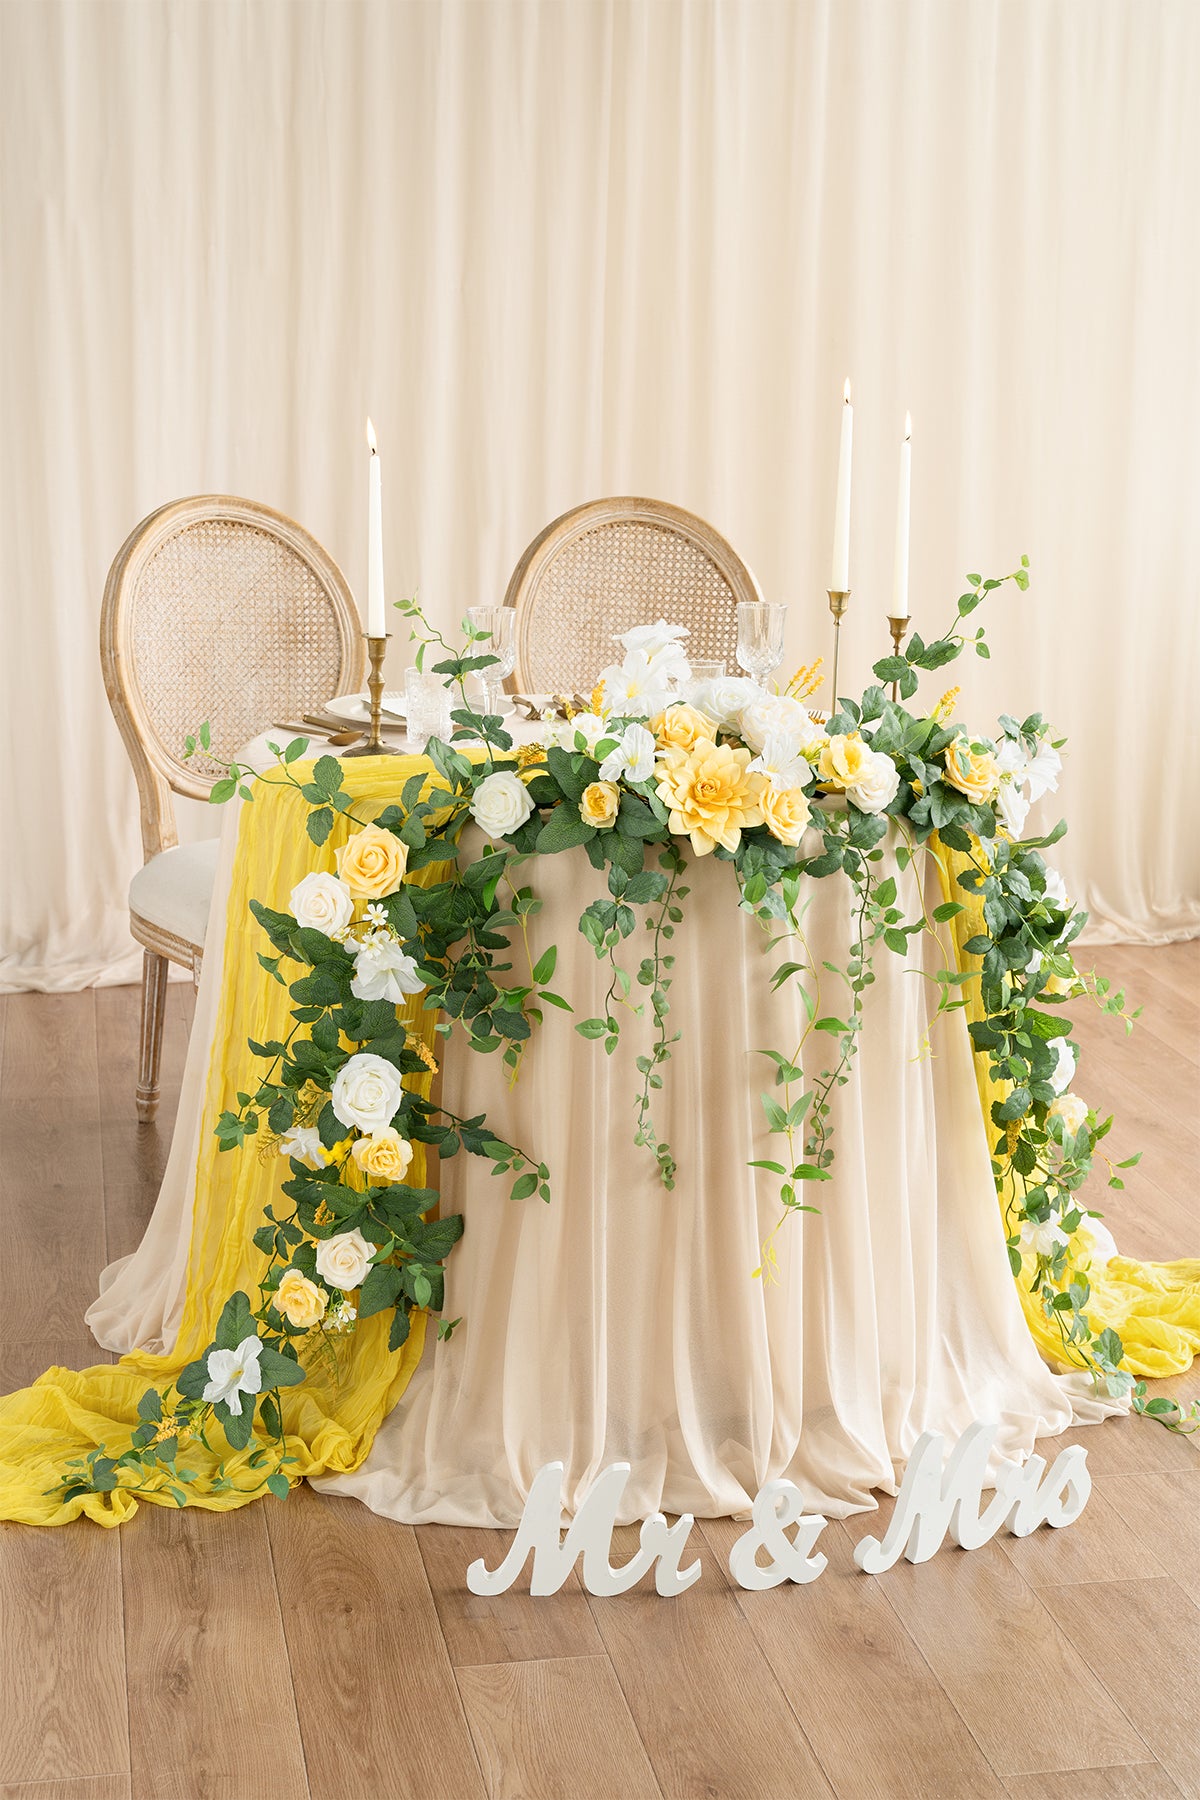 Pre-Arranged Wedding Flower Packages in Lemonade Yellow